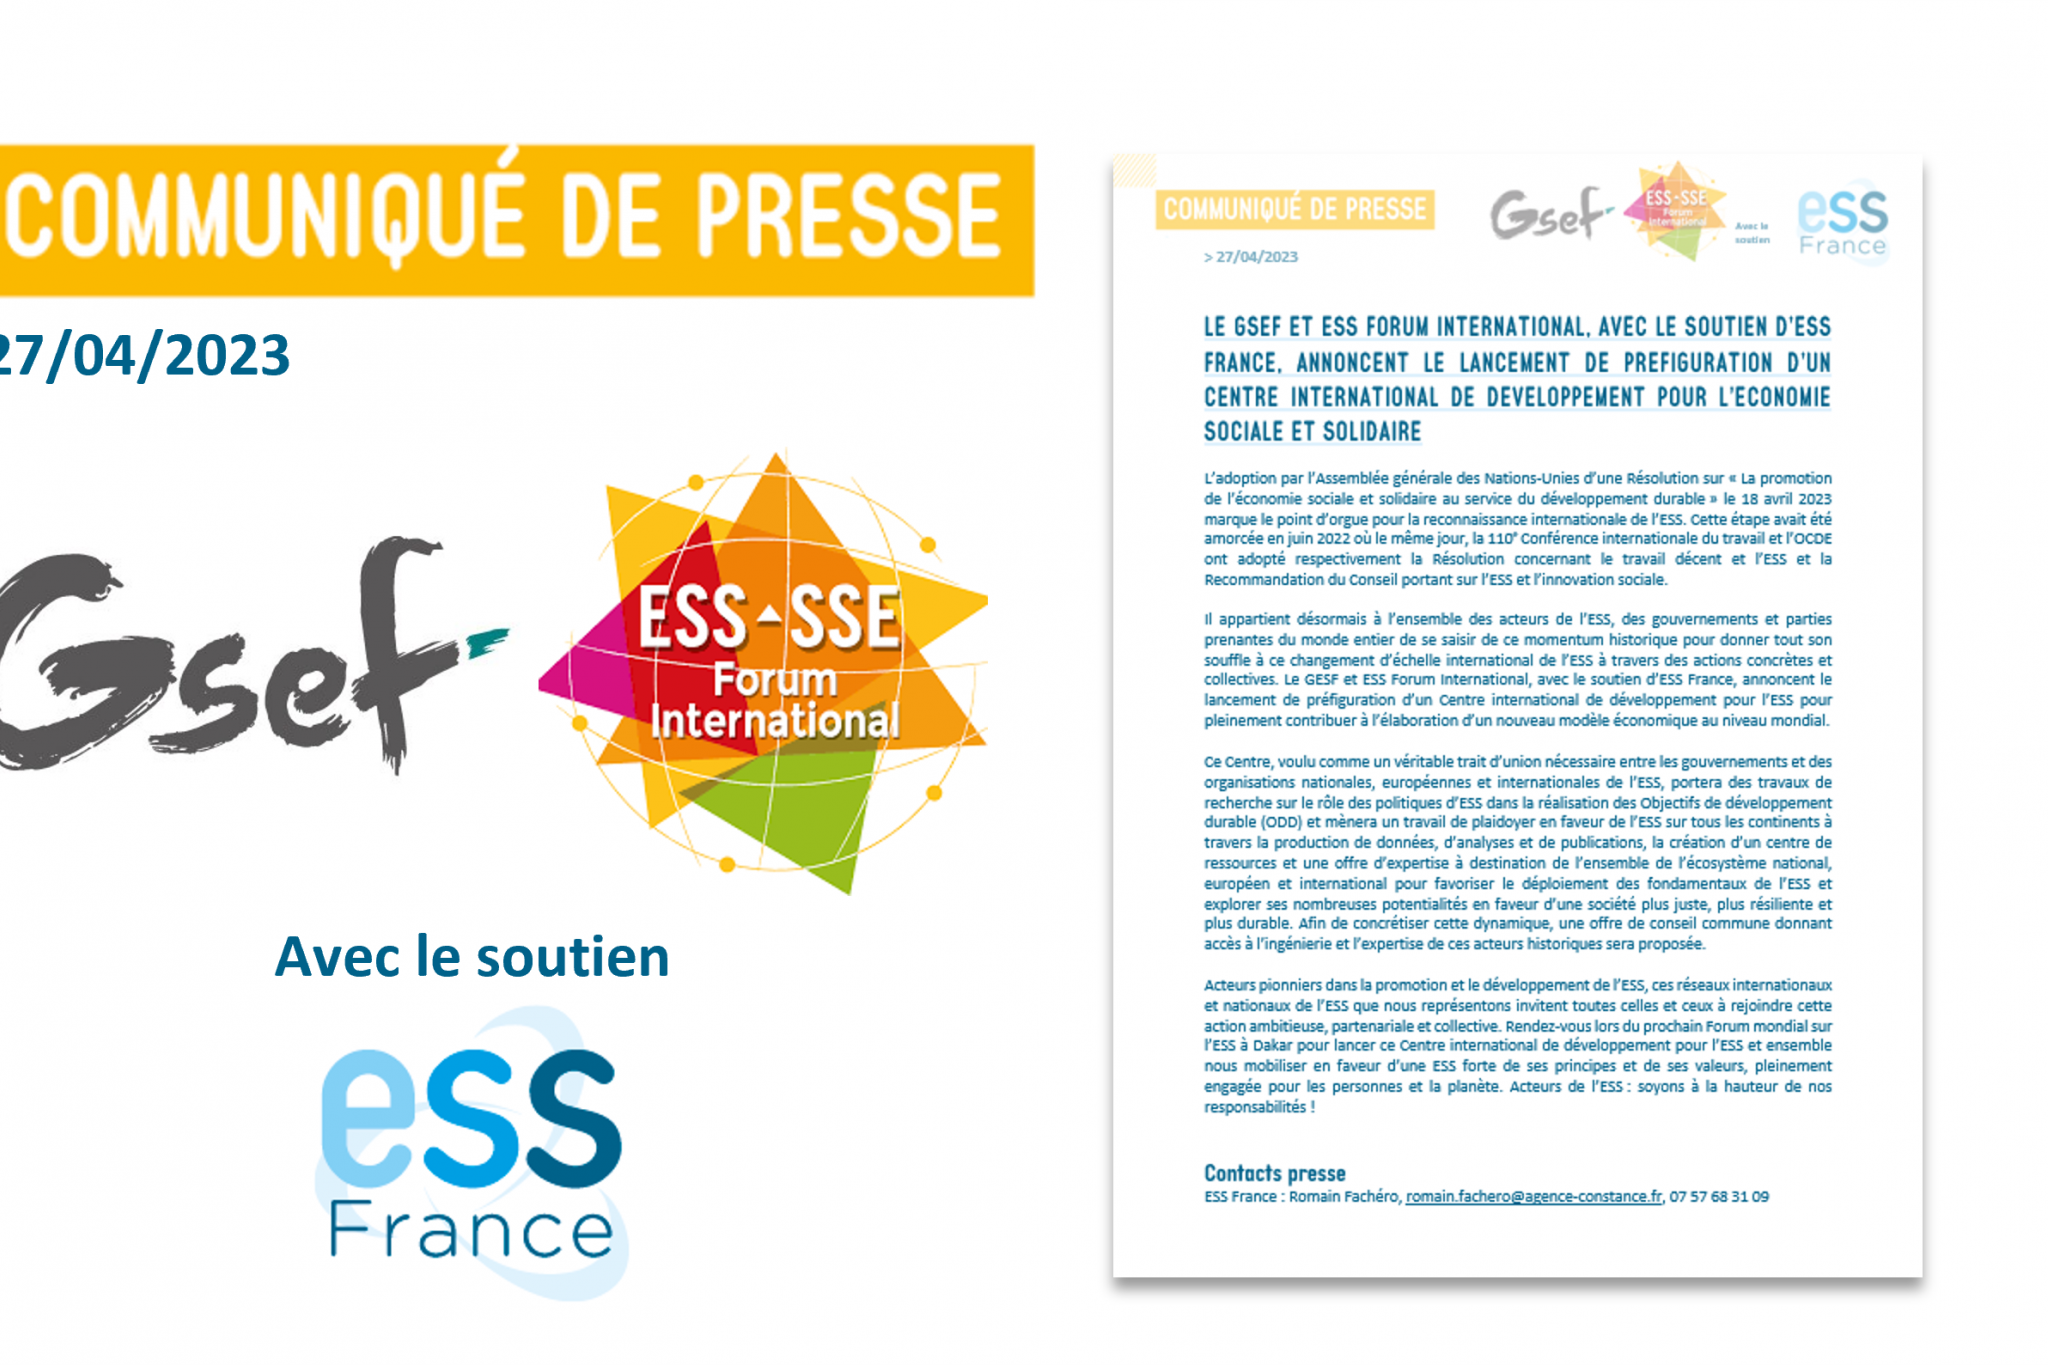 [CP] Le GSEF et ESS Forum International, avec le soutien d'ESS France, annoncent le lancement de préfiguration d'un centre international de développement pour l'ESS